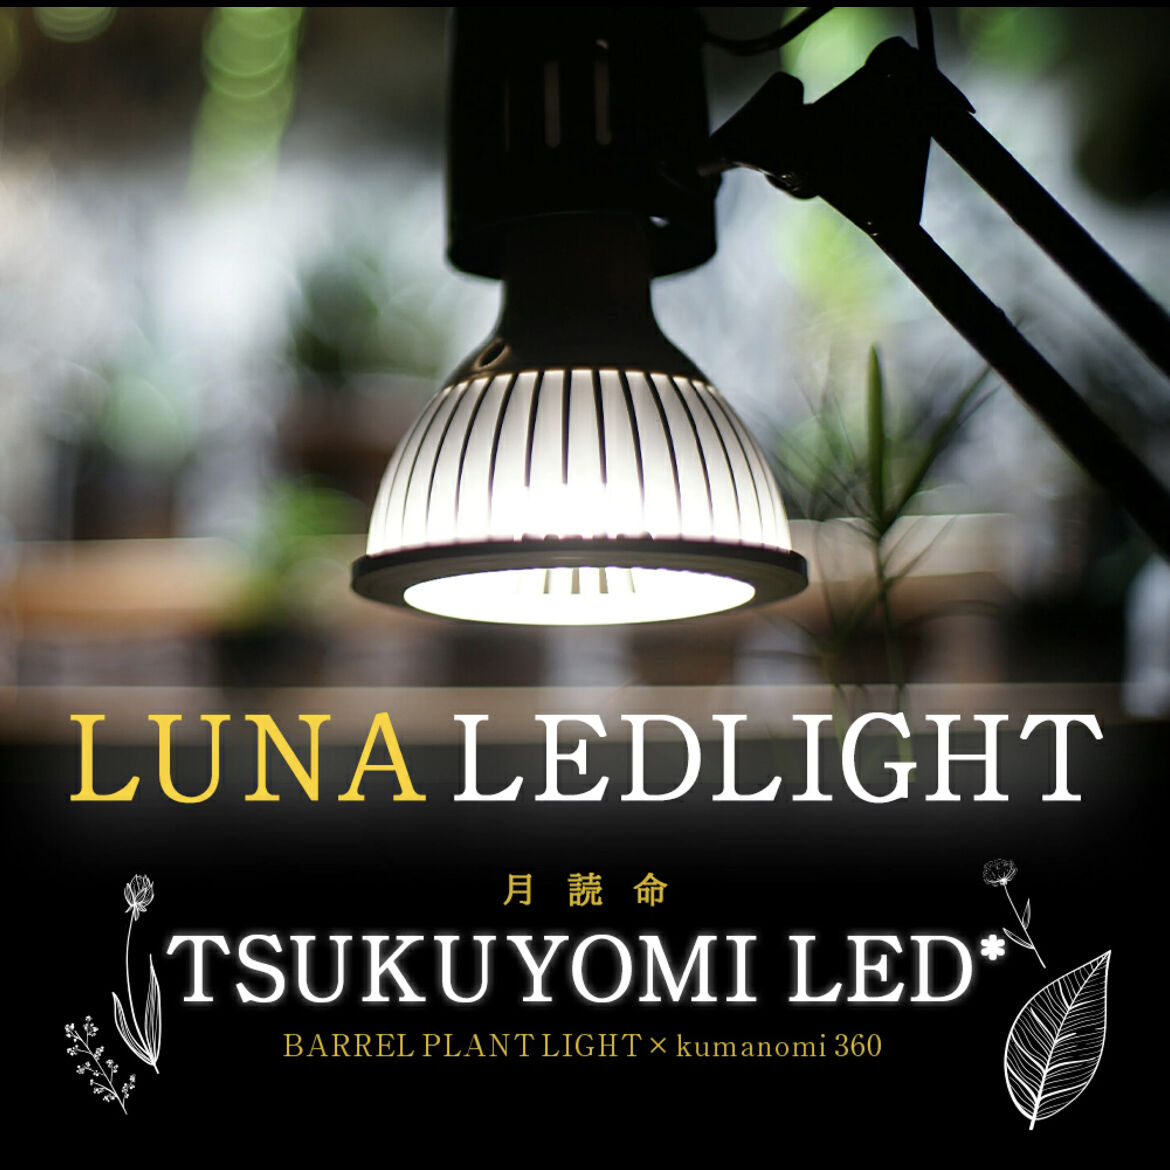 国内外の人気！ ふじもん ツクヨミ植物育成LEDライト20w TSUKUYOMI 